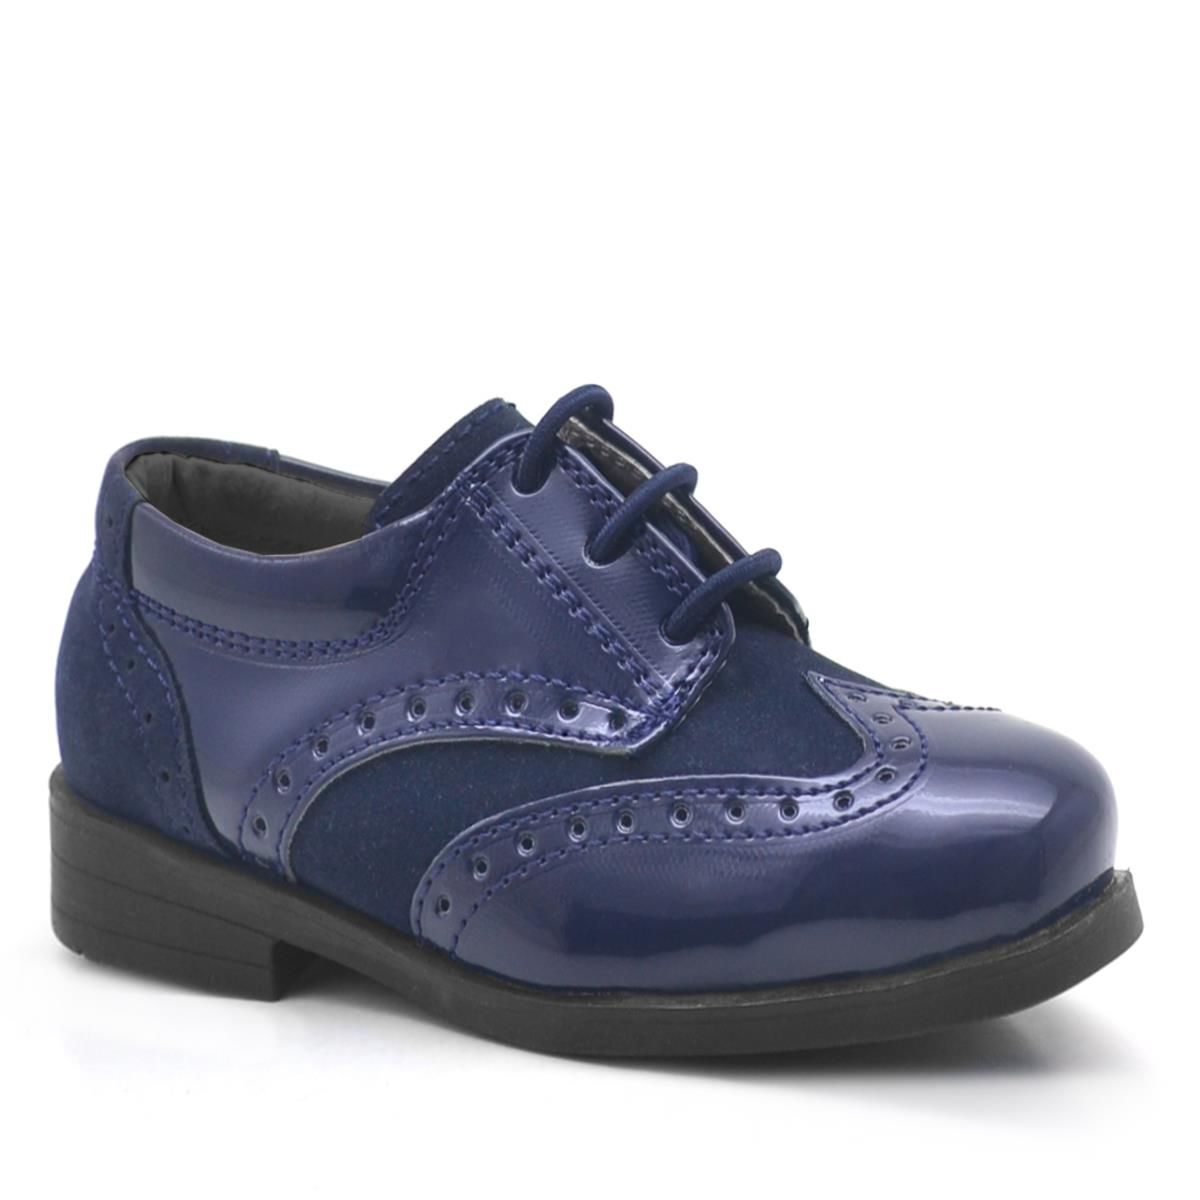 Классические туфли для маленьких мальчиков Rakerplus Titan, темно-синие лакированные кожаные туфли